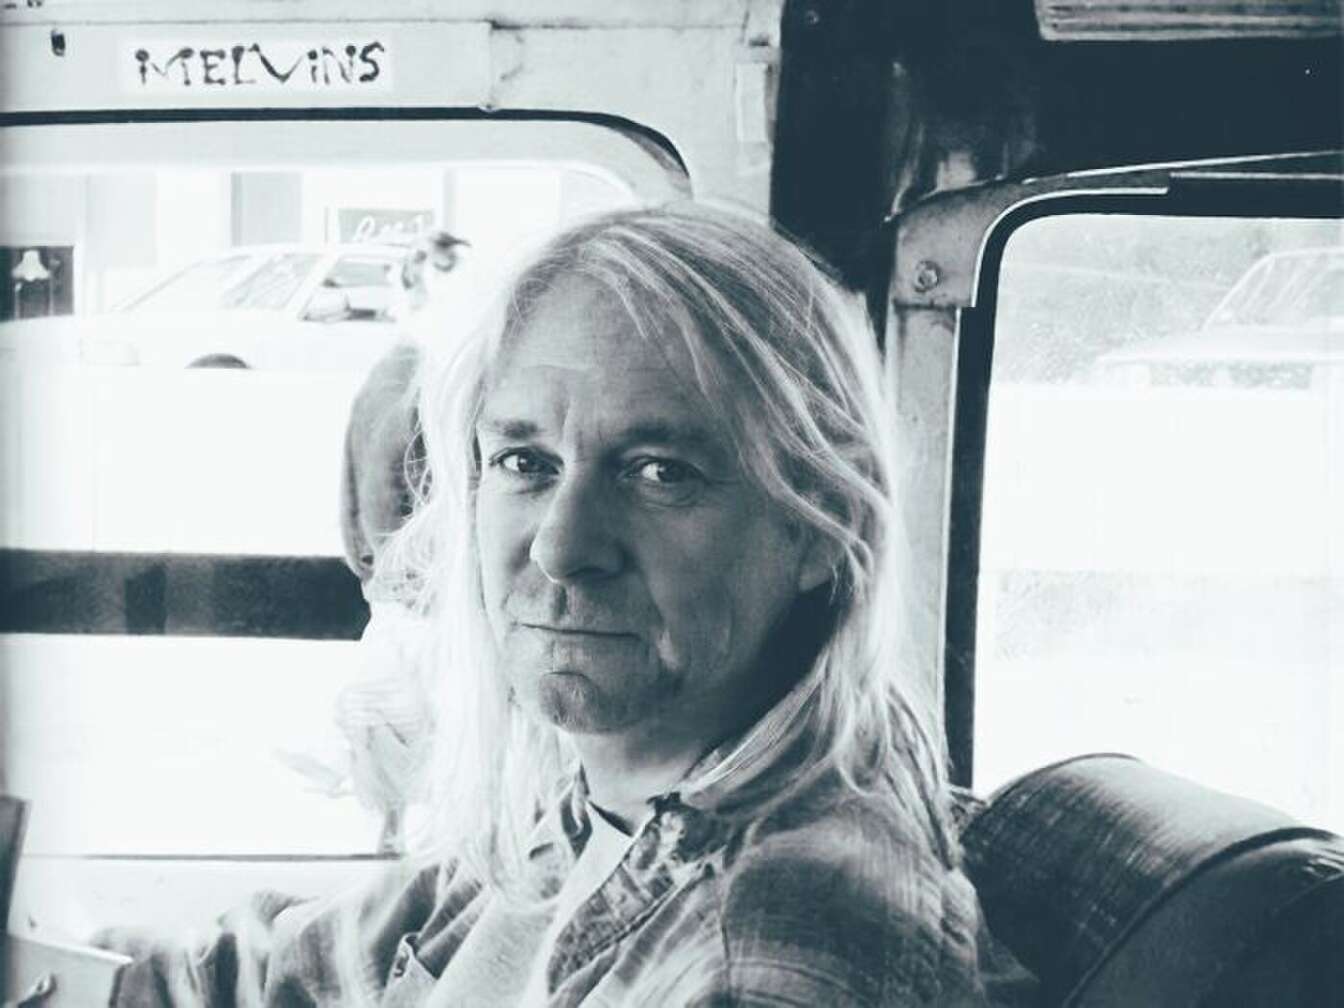 Künstlerportrait von Curt Cobain in älteren Jahren